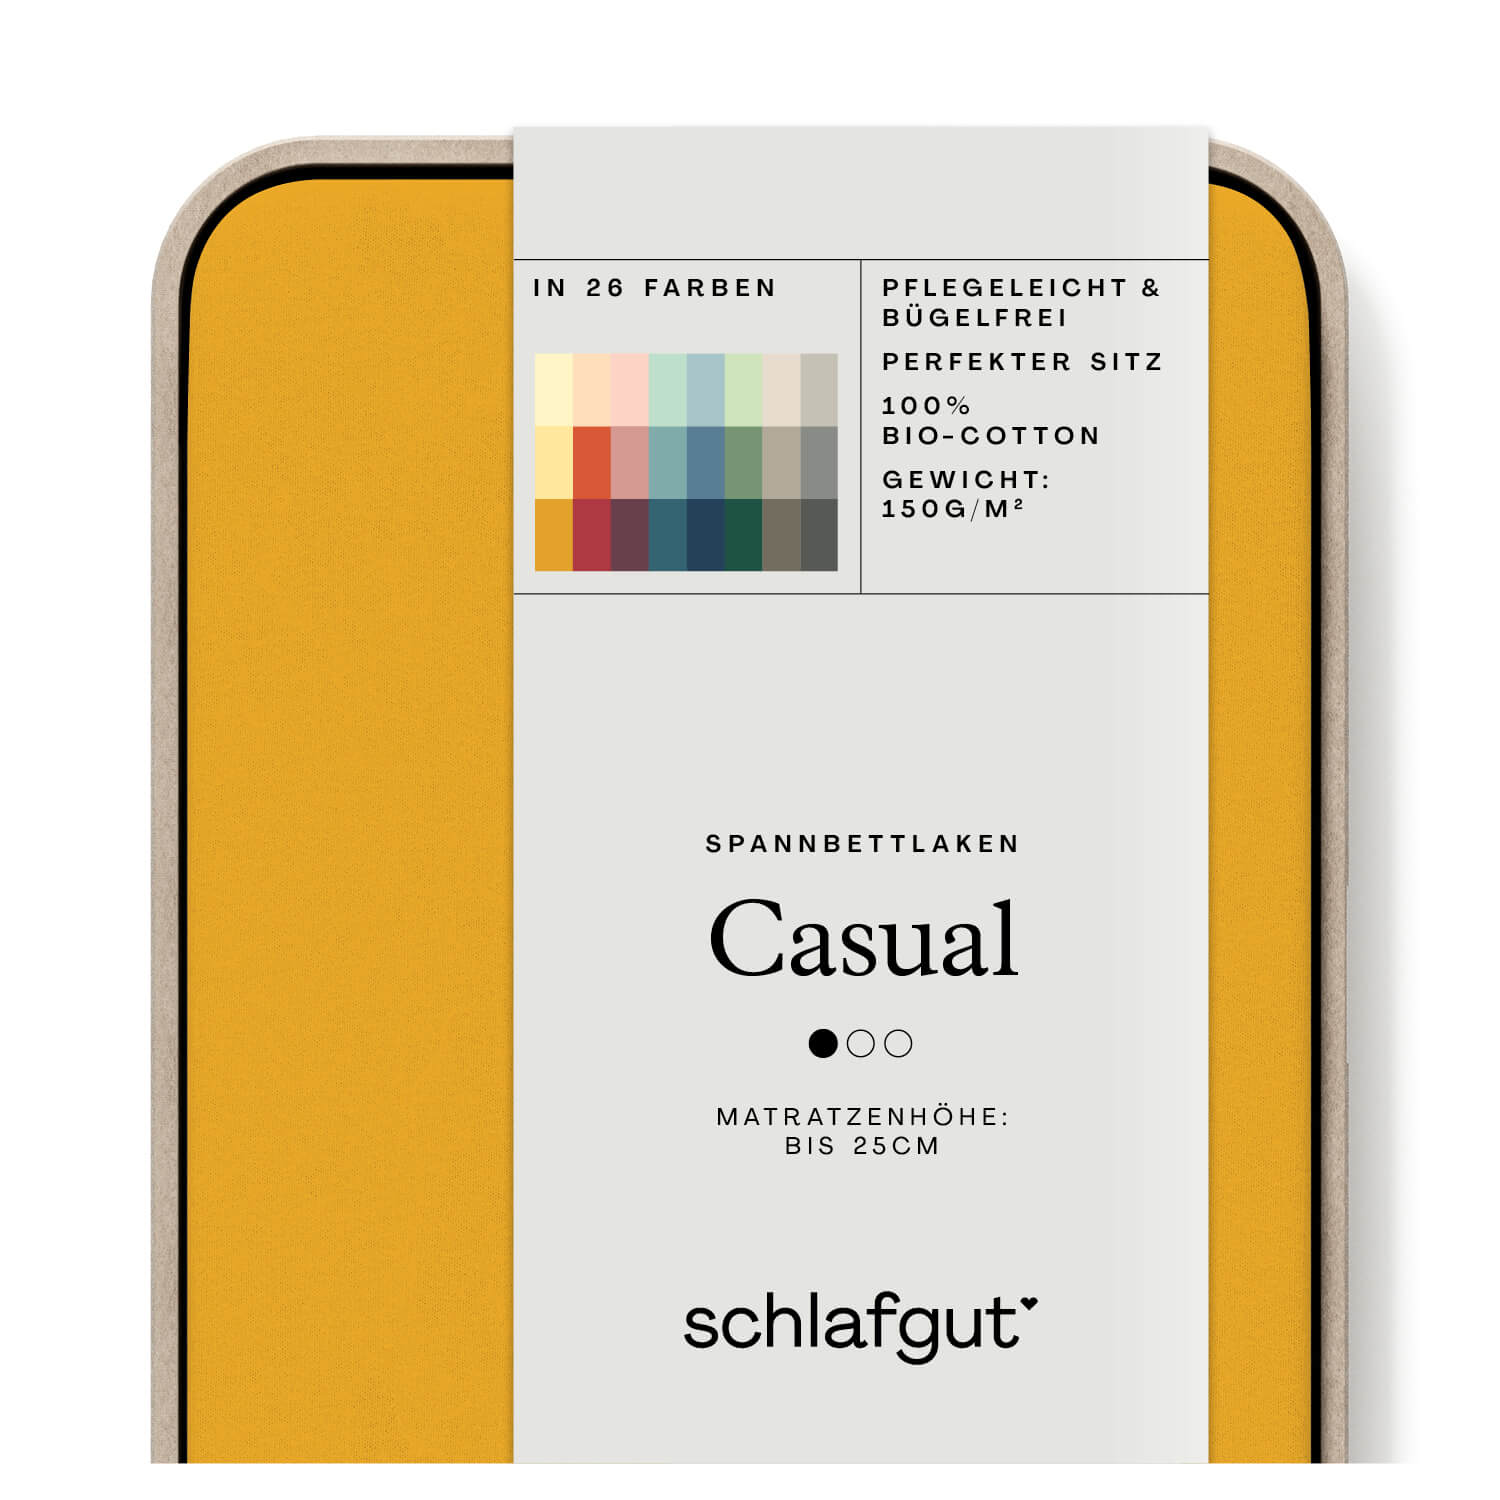 Das Produktbild vom Spannbettlaken der Reihe Casual in Farbe yellow deep von Schlafgut